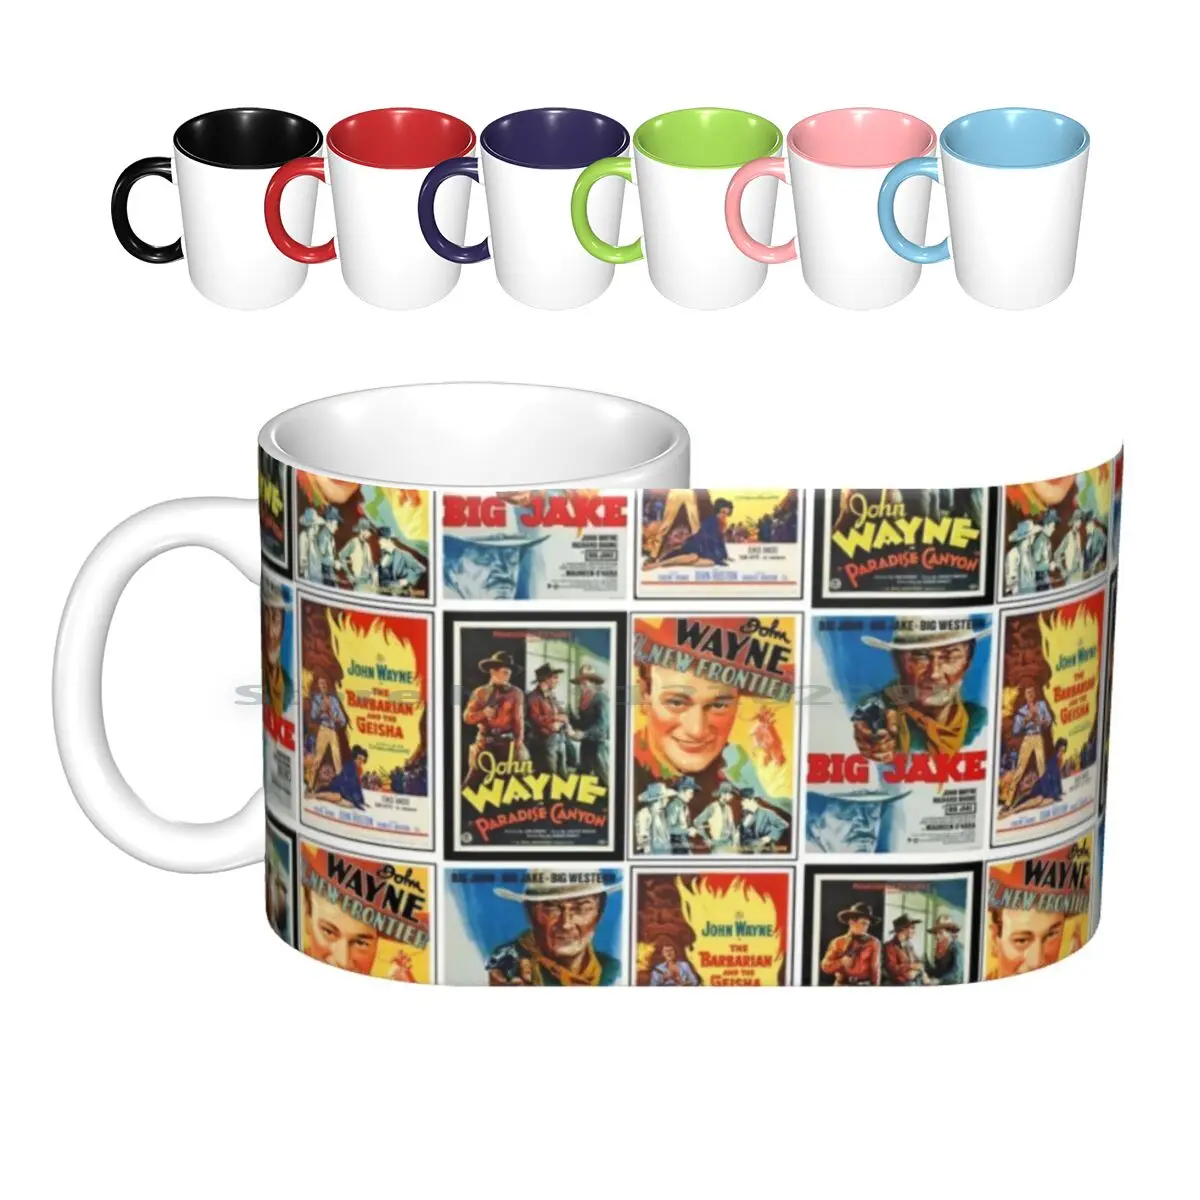 

John Wayne Classic Movies Collage Ceramic Mugs Coffee Cups Milk Tea Mug John Wayne Movie Western Retro Vintage Classic Cinema